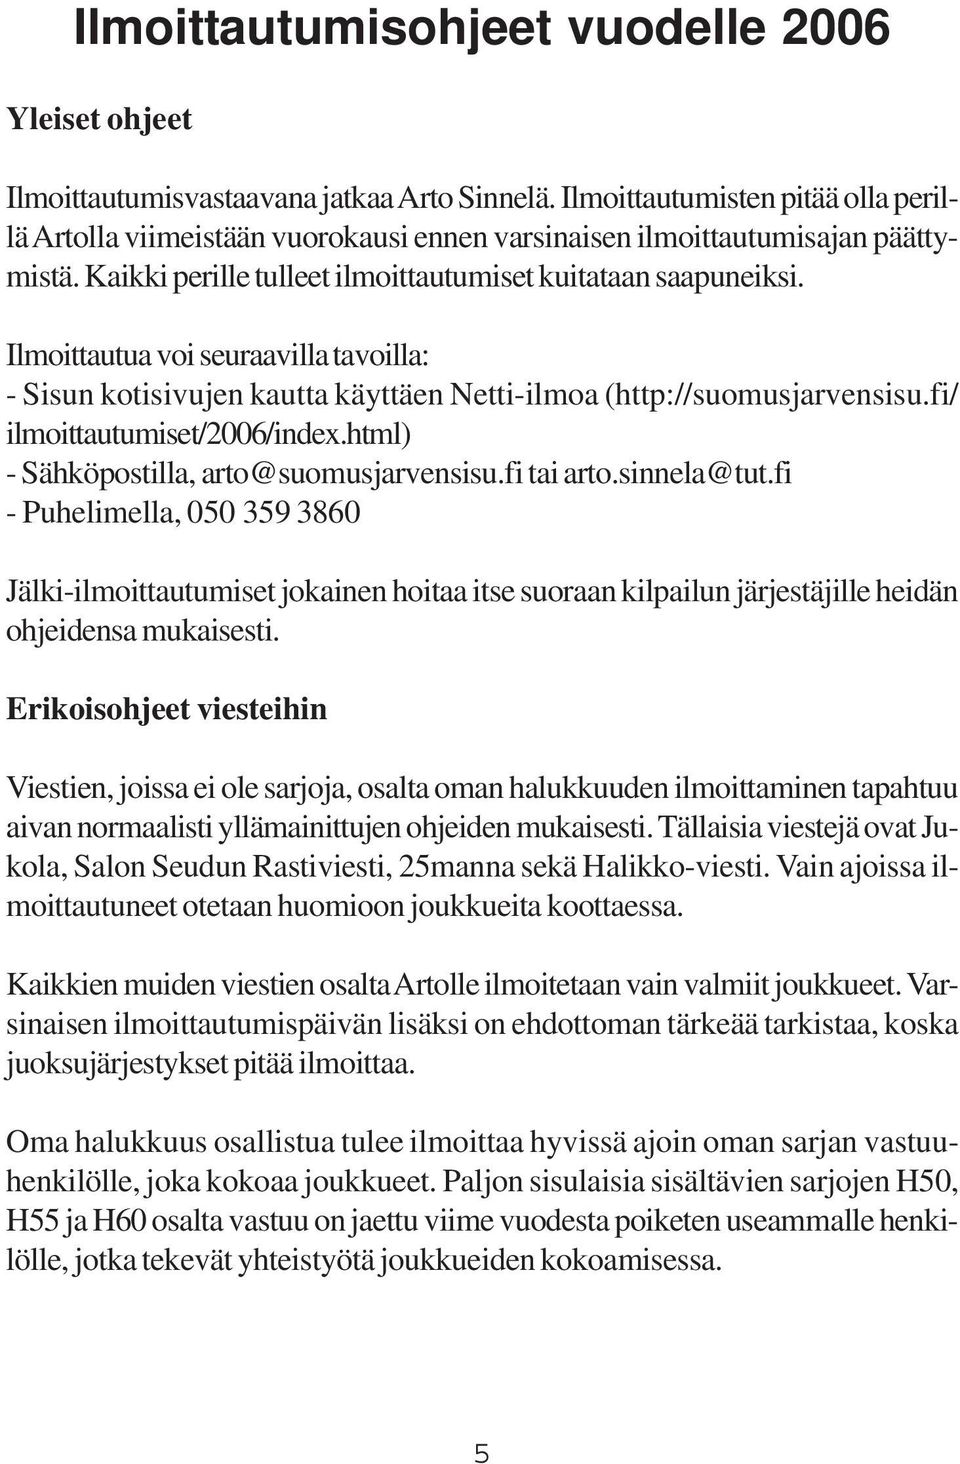 Ilmoittautua voi seuraavilla tavoilla: - Sisun kotisivujen kautta käyttäen Netti-ilmoa (http://suomusjarvensisu.fi/ ilmoittautumiset/2006/index.html) - Sähköpostilla, arto@suomusjarvensisu.